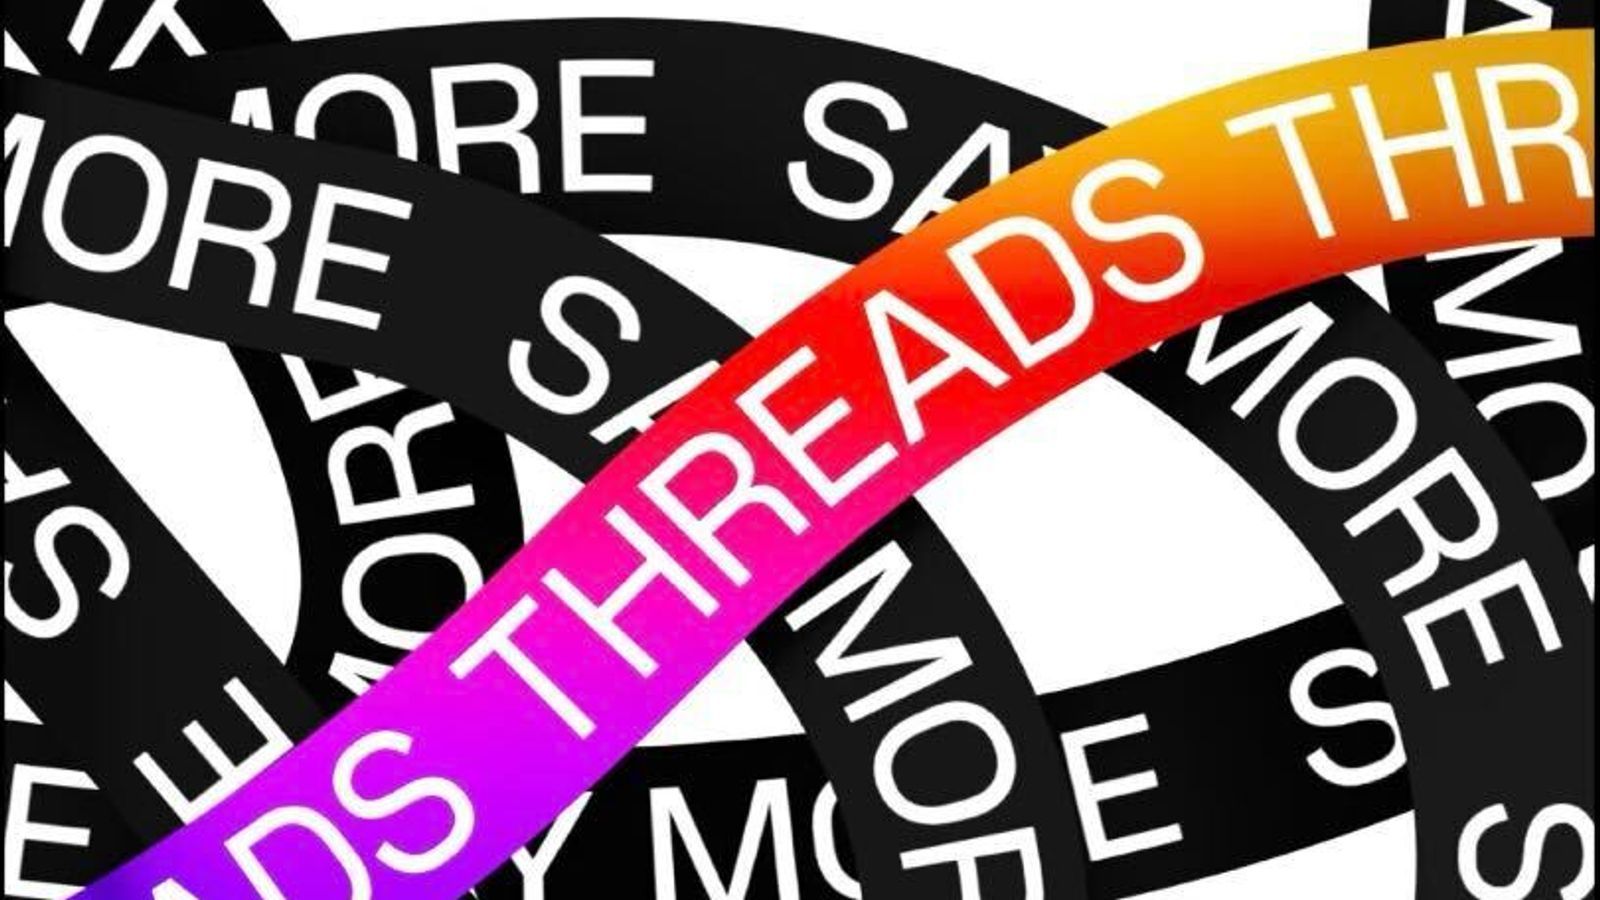 Маск обиделся: Twitter угрожает судебным иском против Meta из-за приложения Threads - Техно